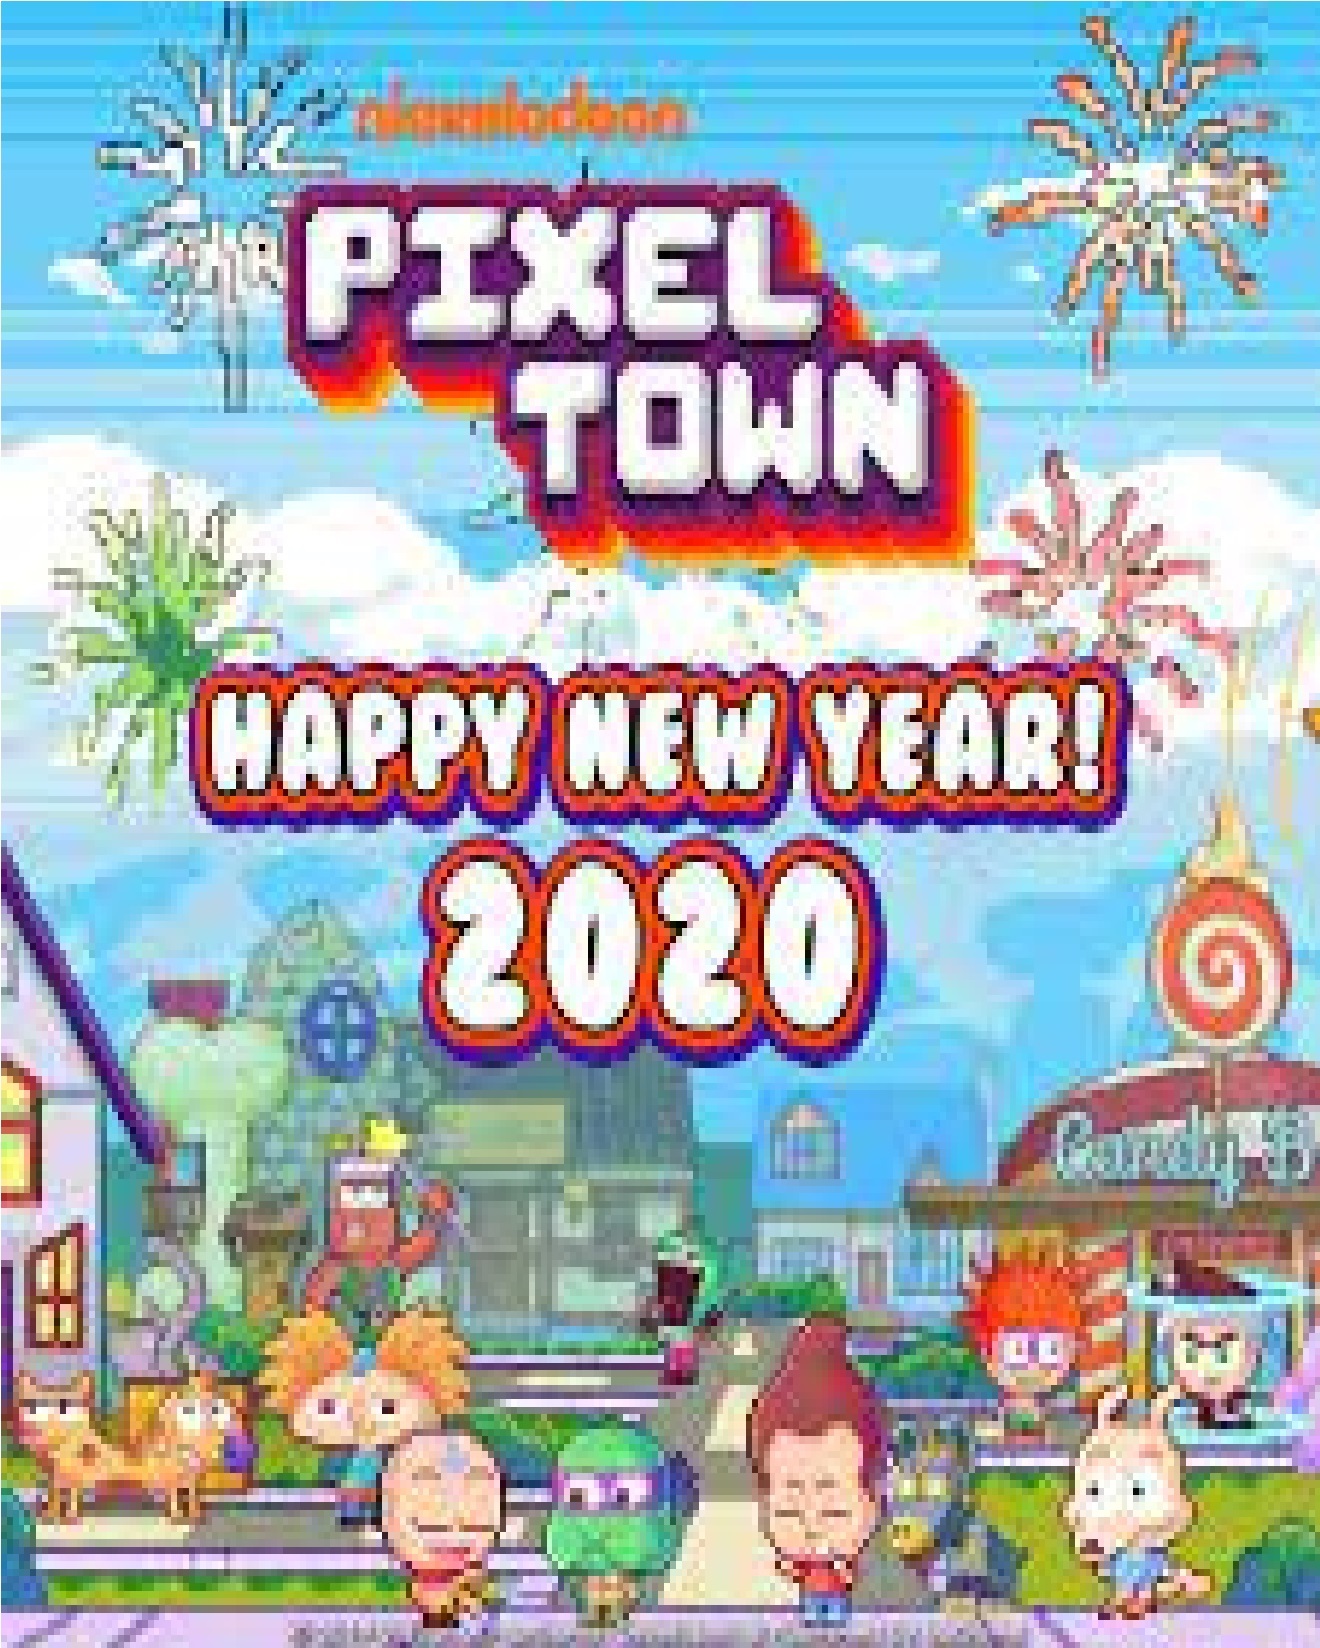 Nickelodeon Pixel Town